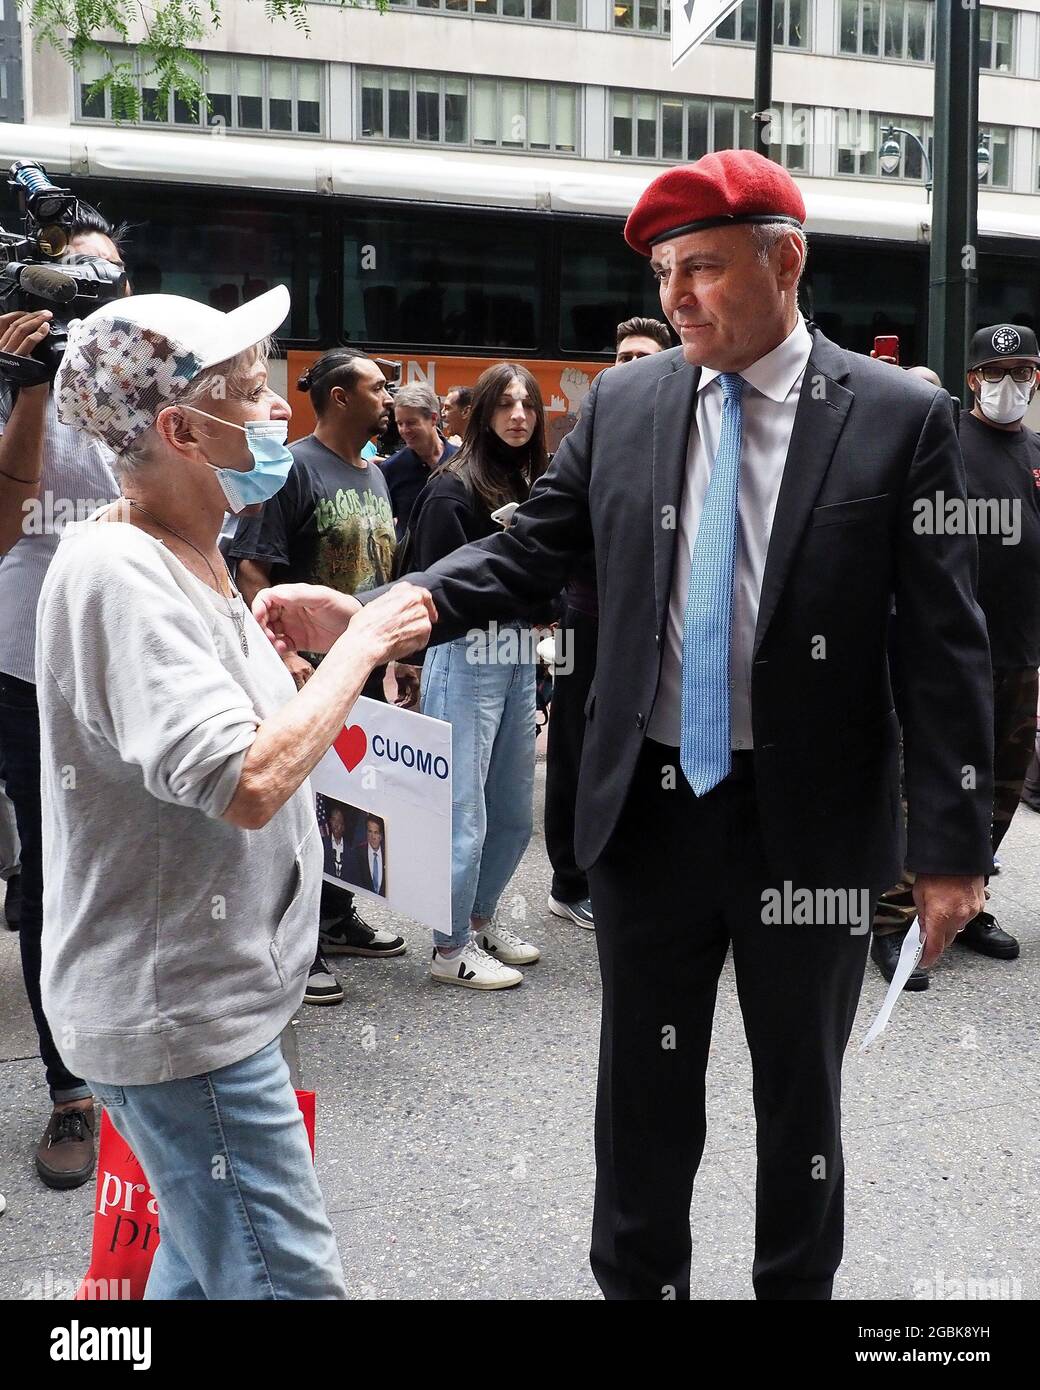 New York, New York, États-Unis. 4 août 2021. Curtis Sliwa, candidate  républicaine pour la ville de New York, parle avec une femme à l'extérieur  du bureau de Manhattan du gouverneur de New